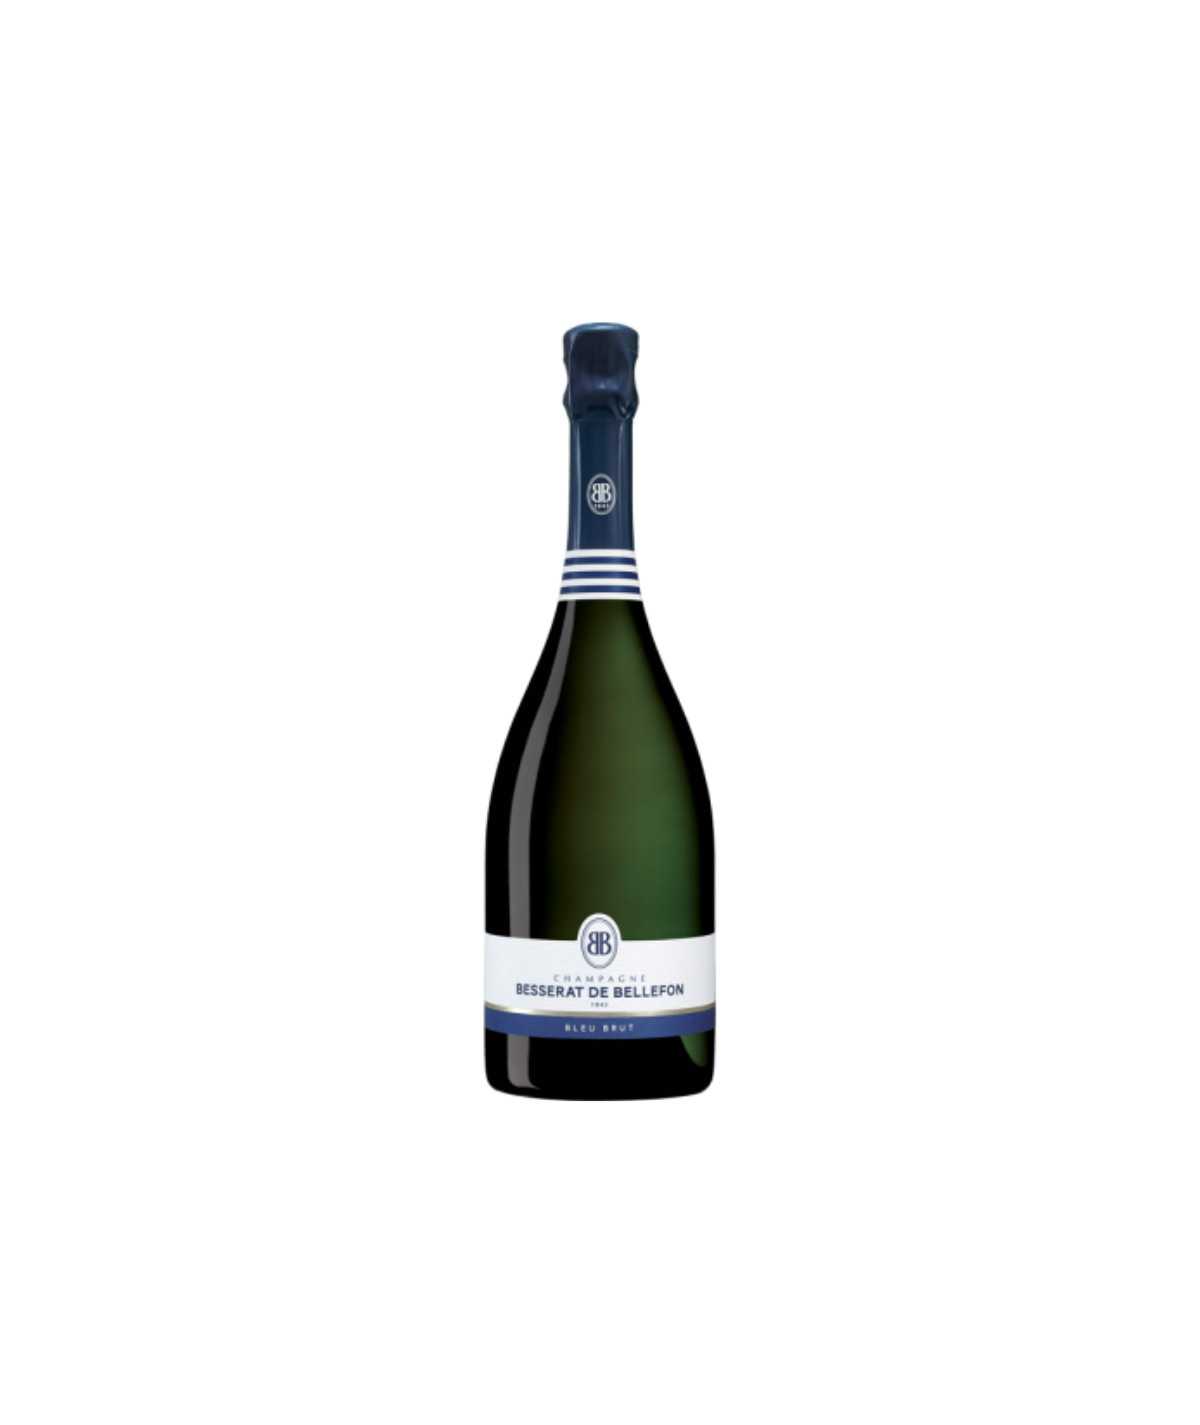 Bottle of Besserat de Bellefon Bleu Brut Champagne